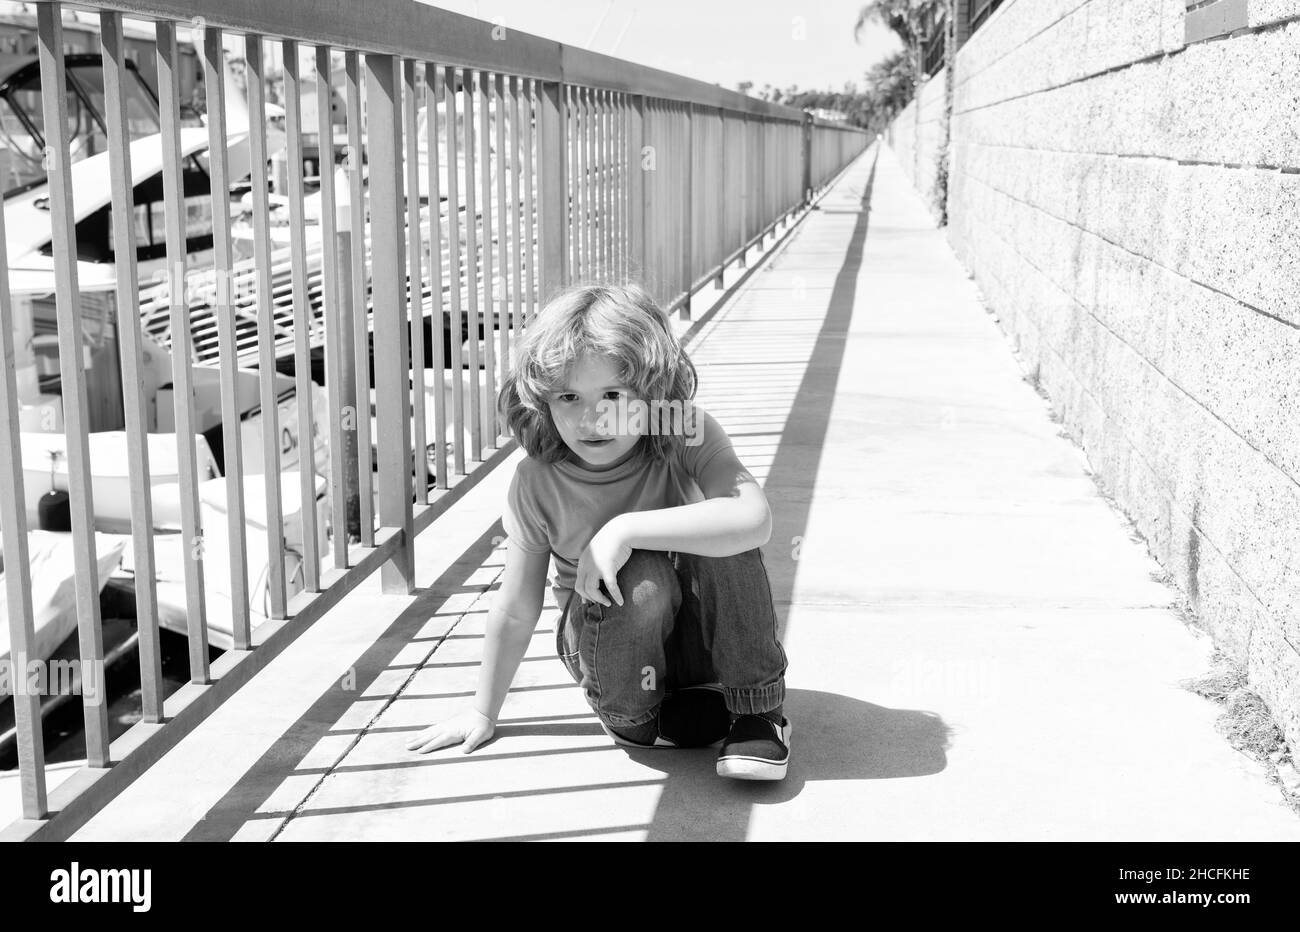 Junge Kind kurze Pause machen, hunkering unten auf der Promenade, Ruhe Stockfoto